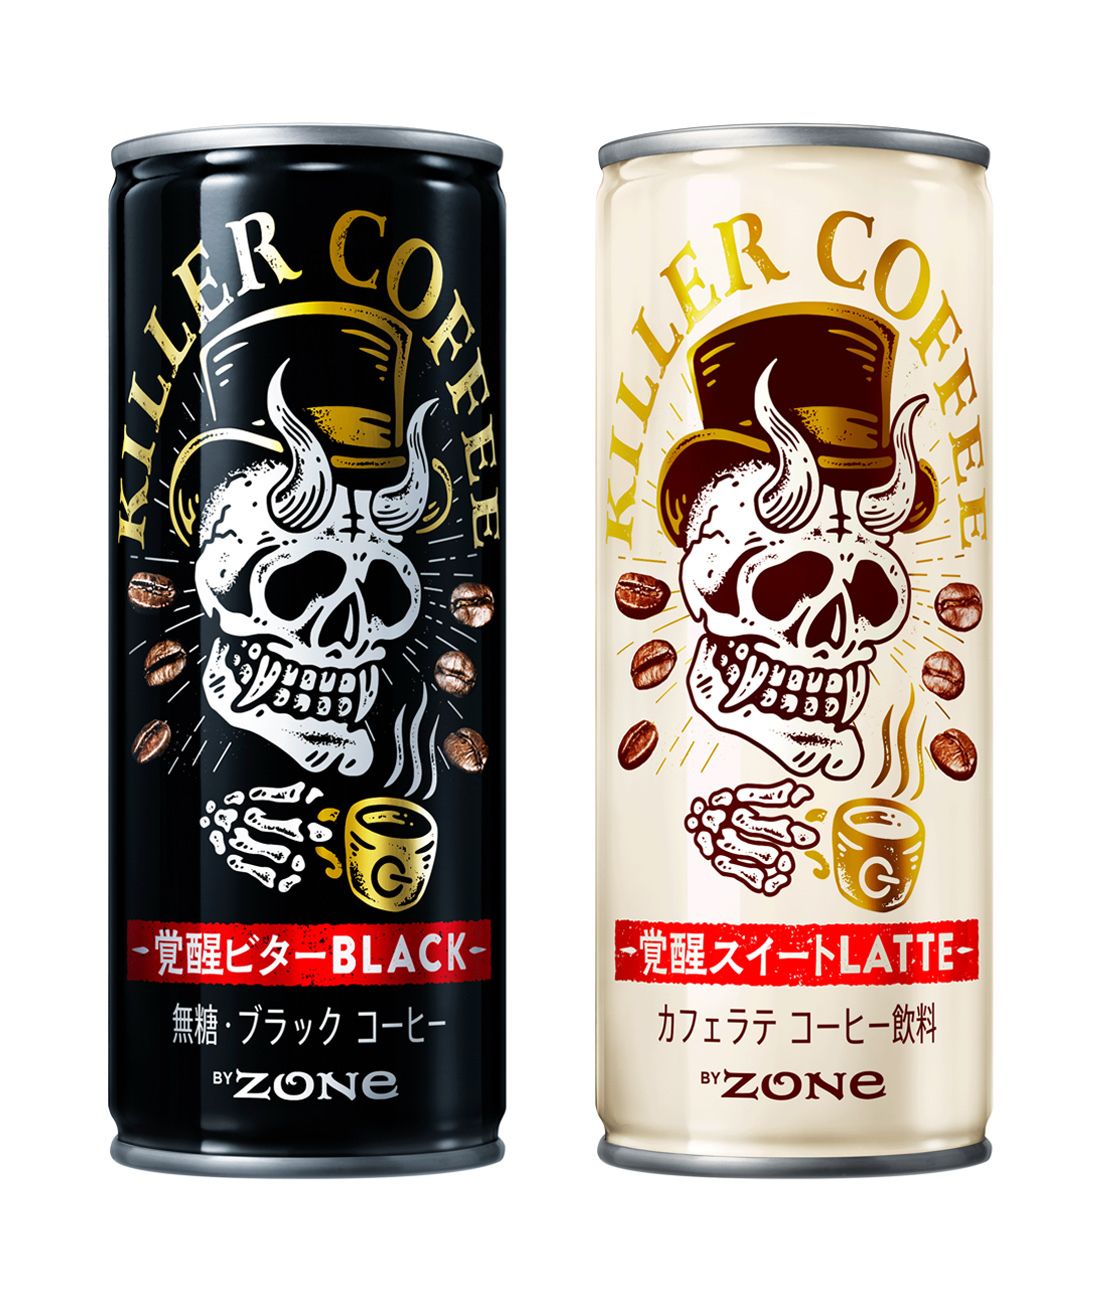 【眠気を殺す缶コーヒー】「ＫＩＬＬＥＲ ＣＯＦＦＥＥ（キラーコーヒー）」新発売！#Z世代Pick